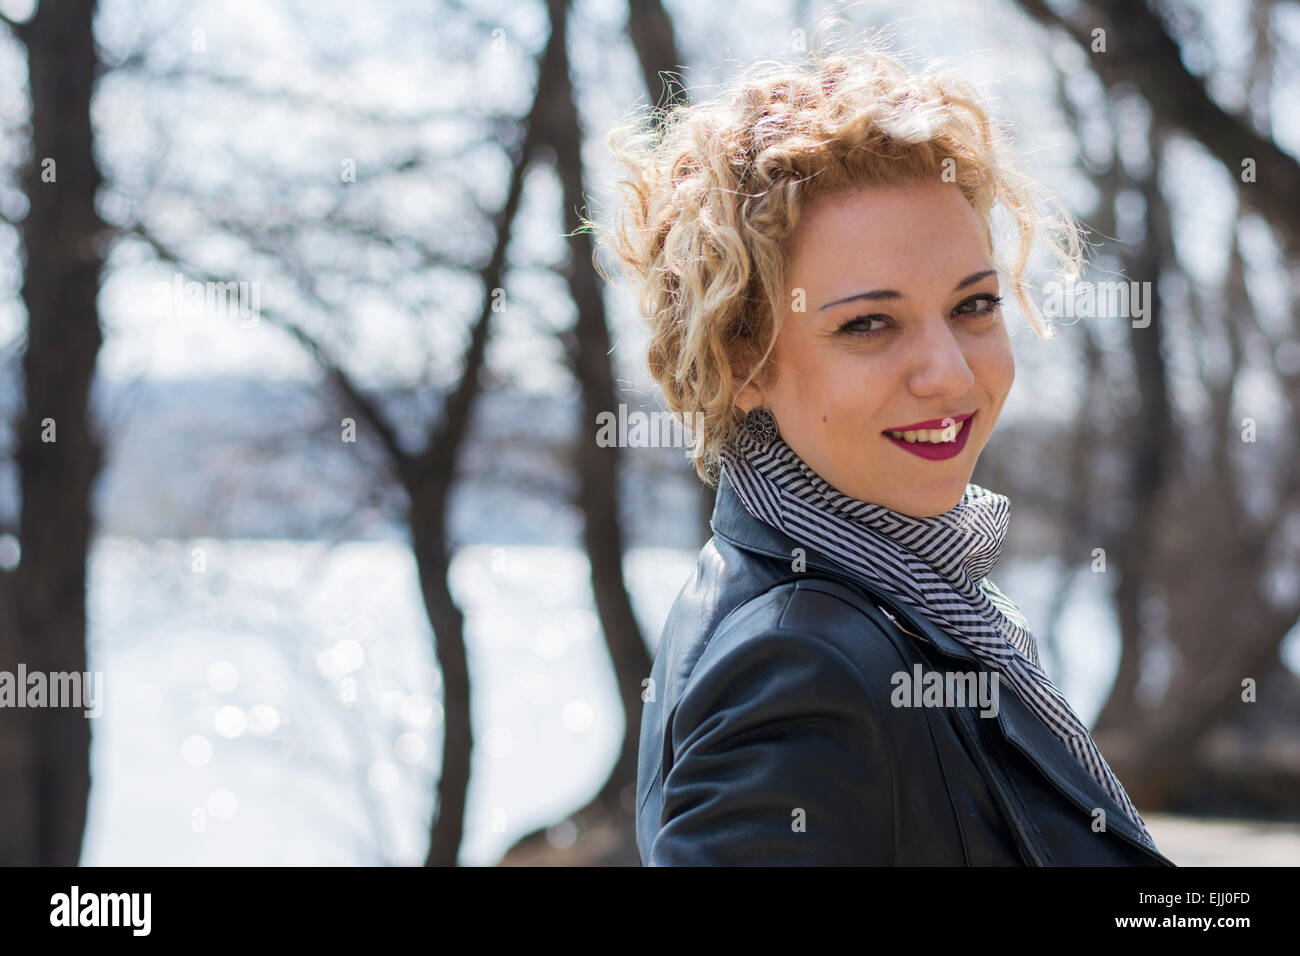 Porträt einer hübschen jungen Frau mit blonden lockigen Haaren lächelnd und verschwinden im Wald am Fluss Stockfoto